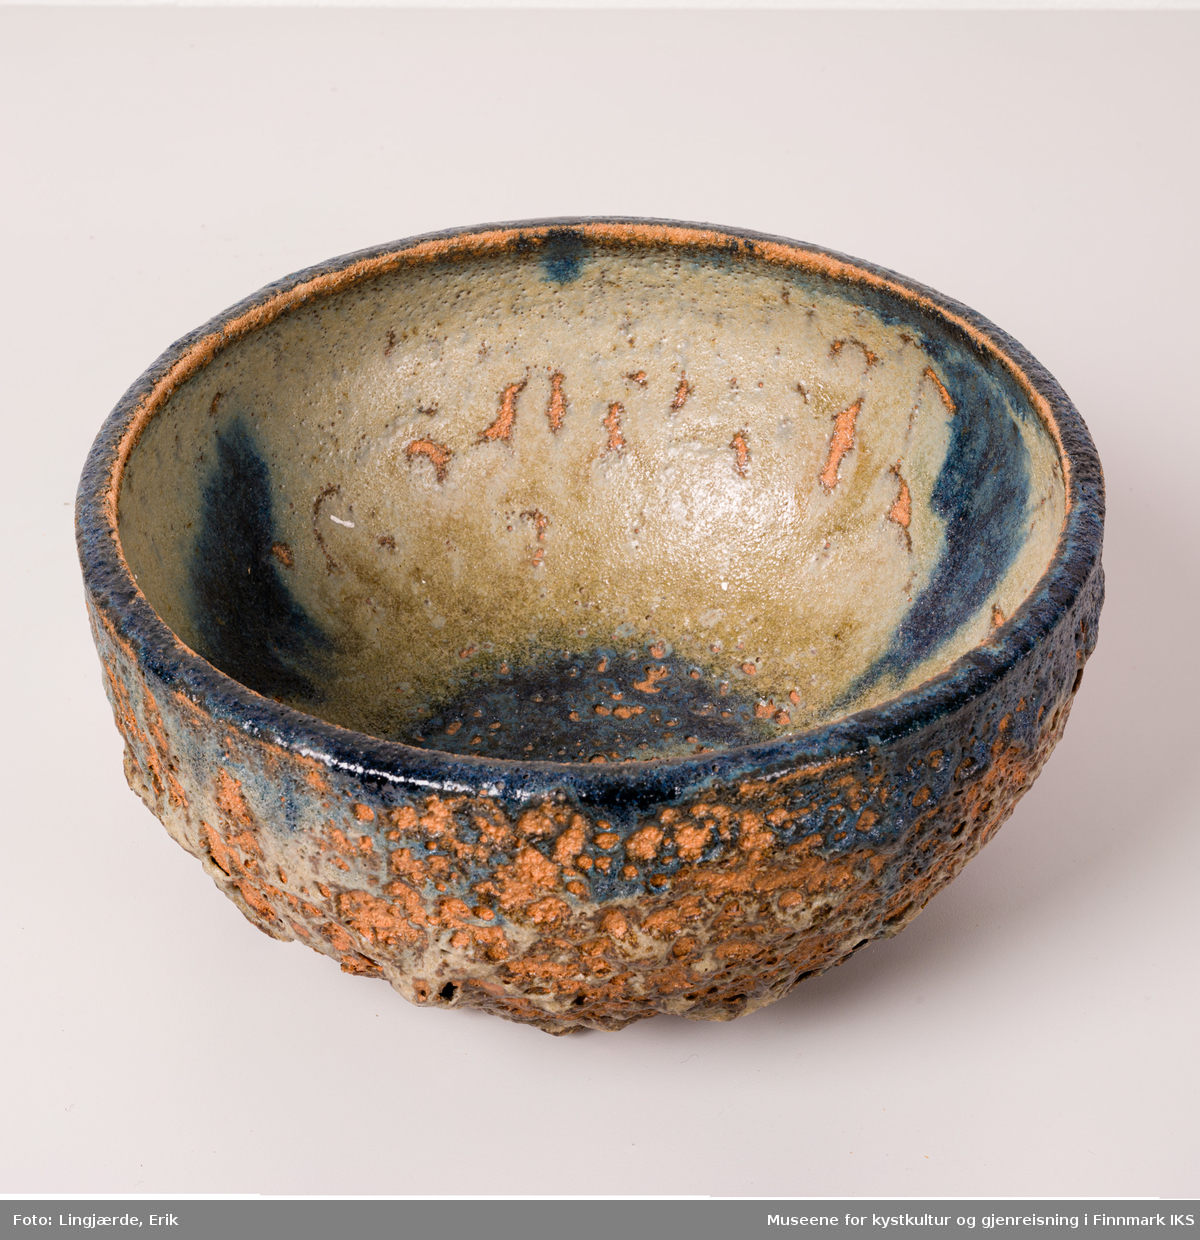 Skålen er utført i keramikk, med en grov, askeglasert overflate, bestående av en miks av jordtoner og forskjellige strukturelementer.